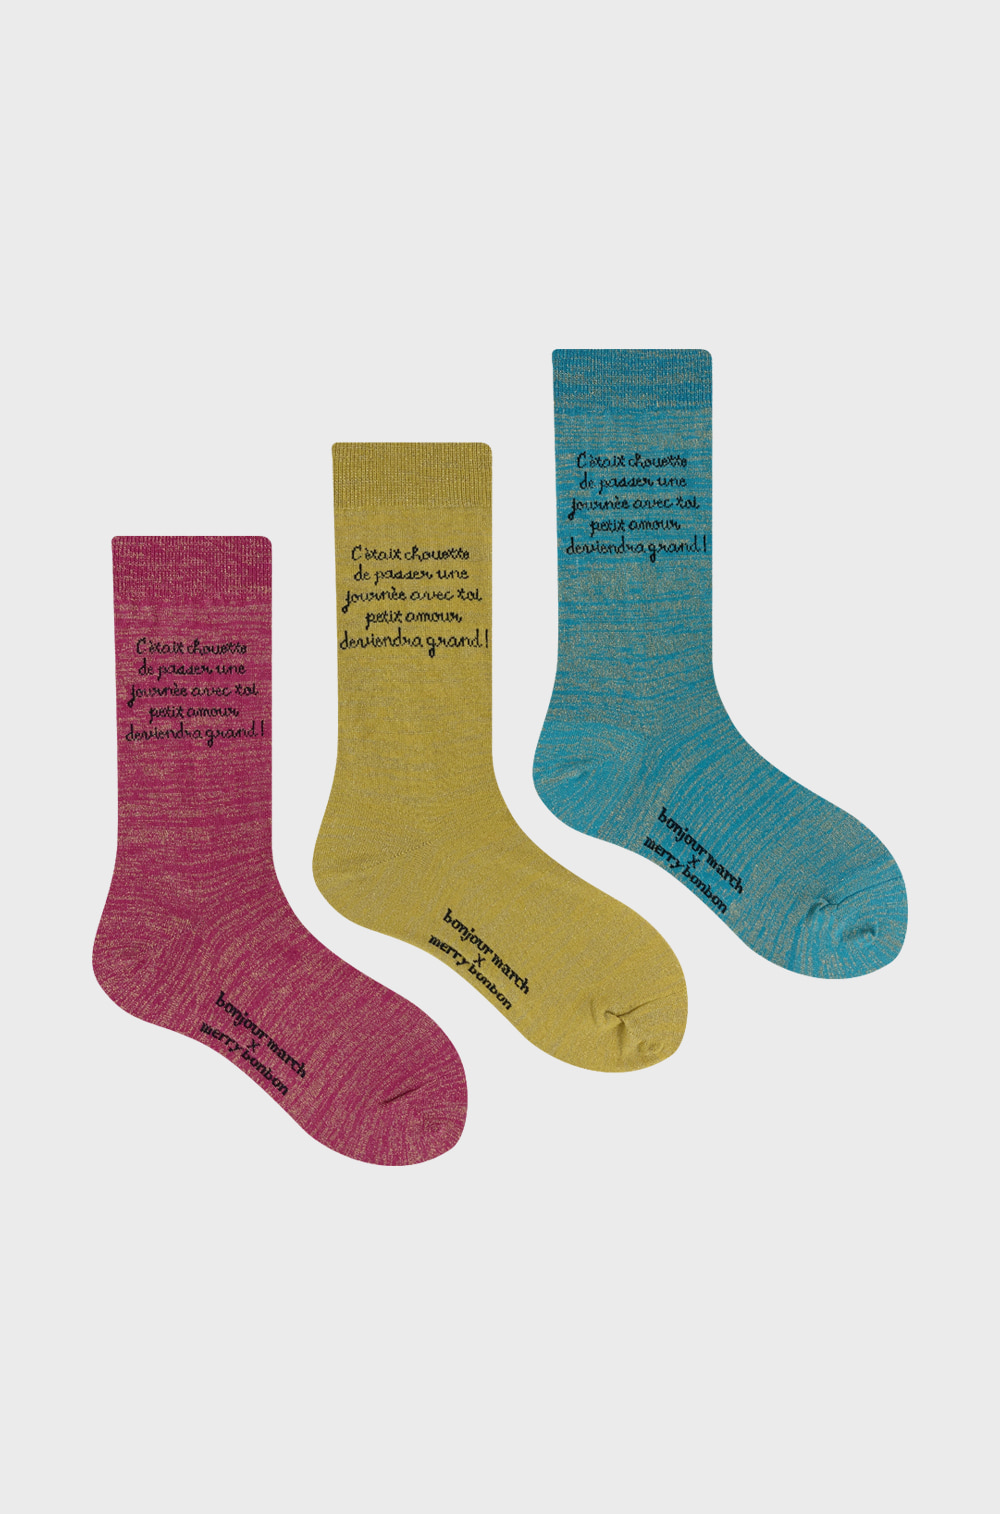 Bonjourmarch x merrybonbon socks_twinkle socks